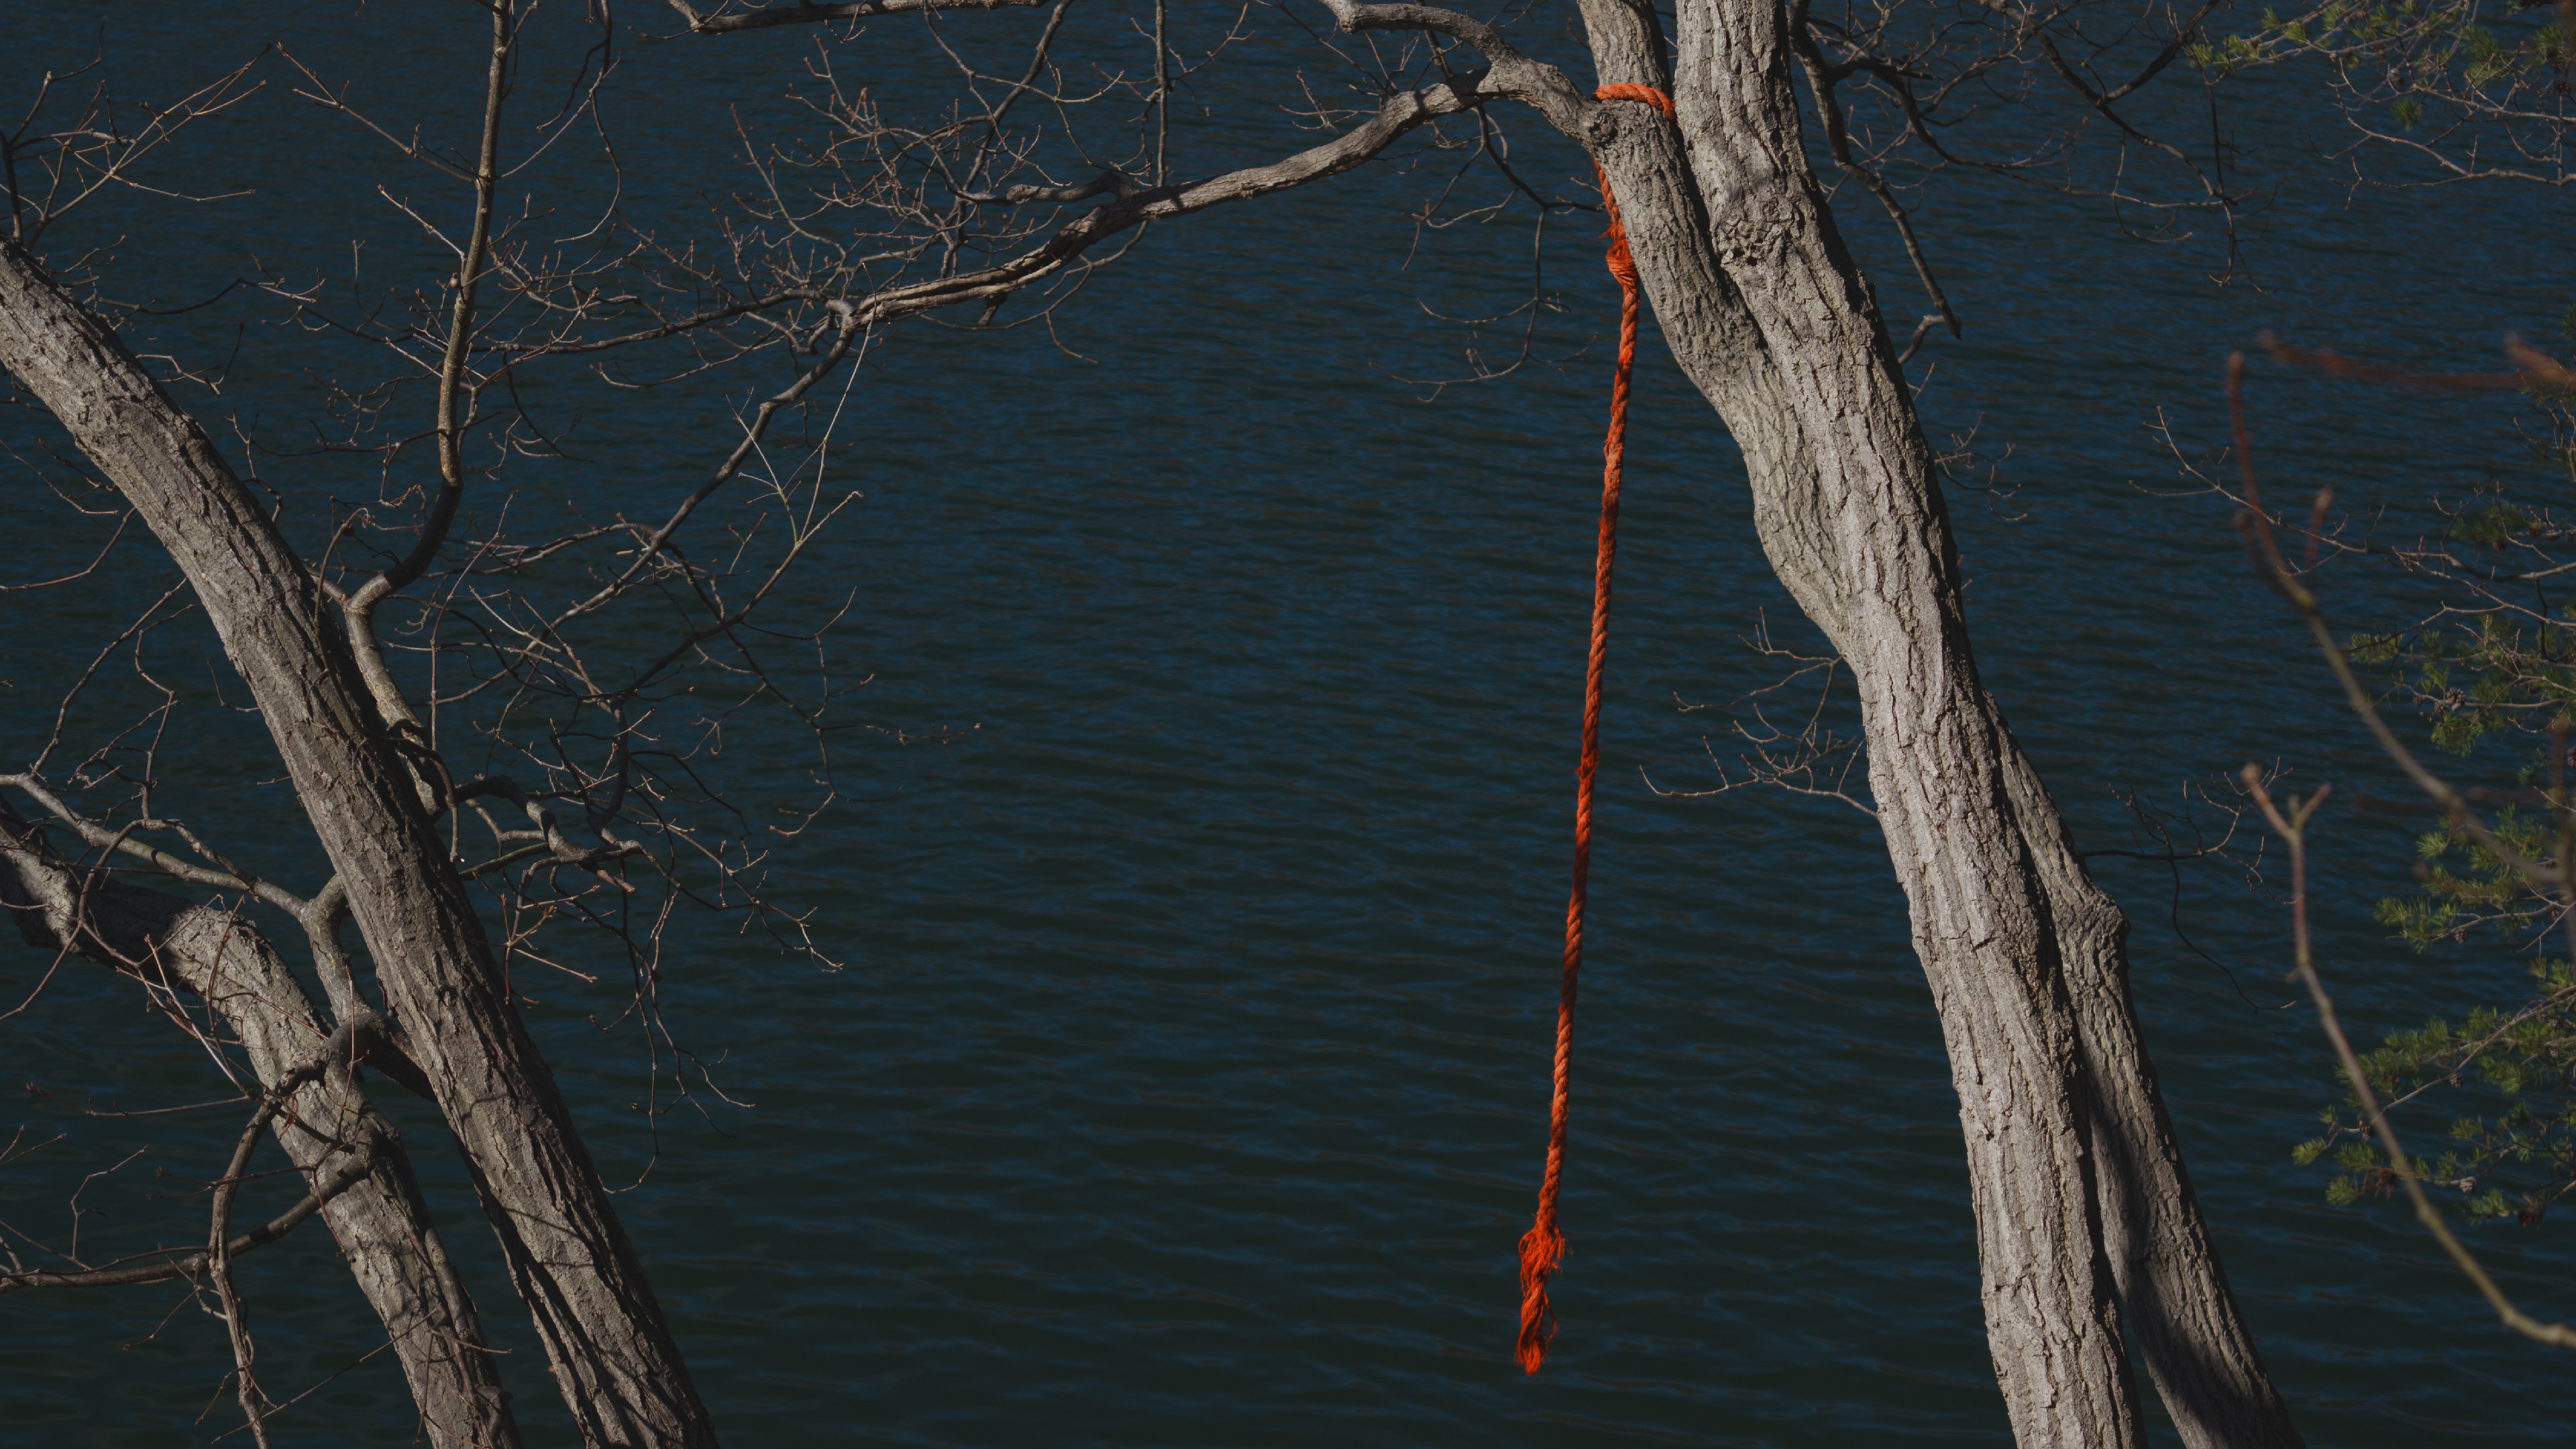 General 3840x2160 water rope swing trees